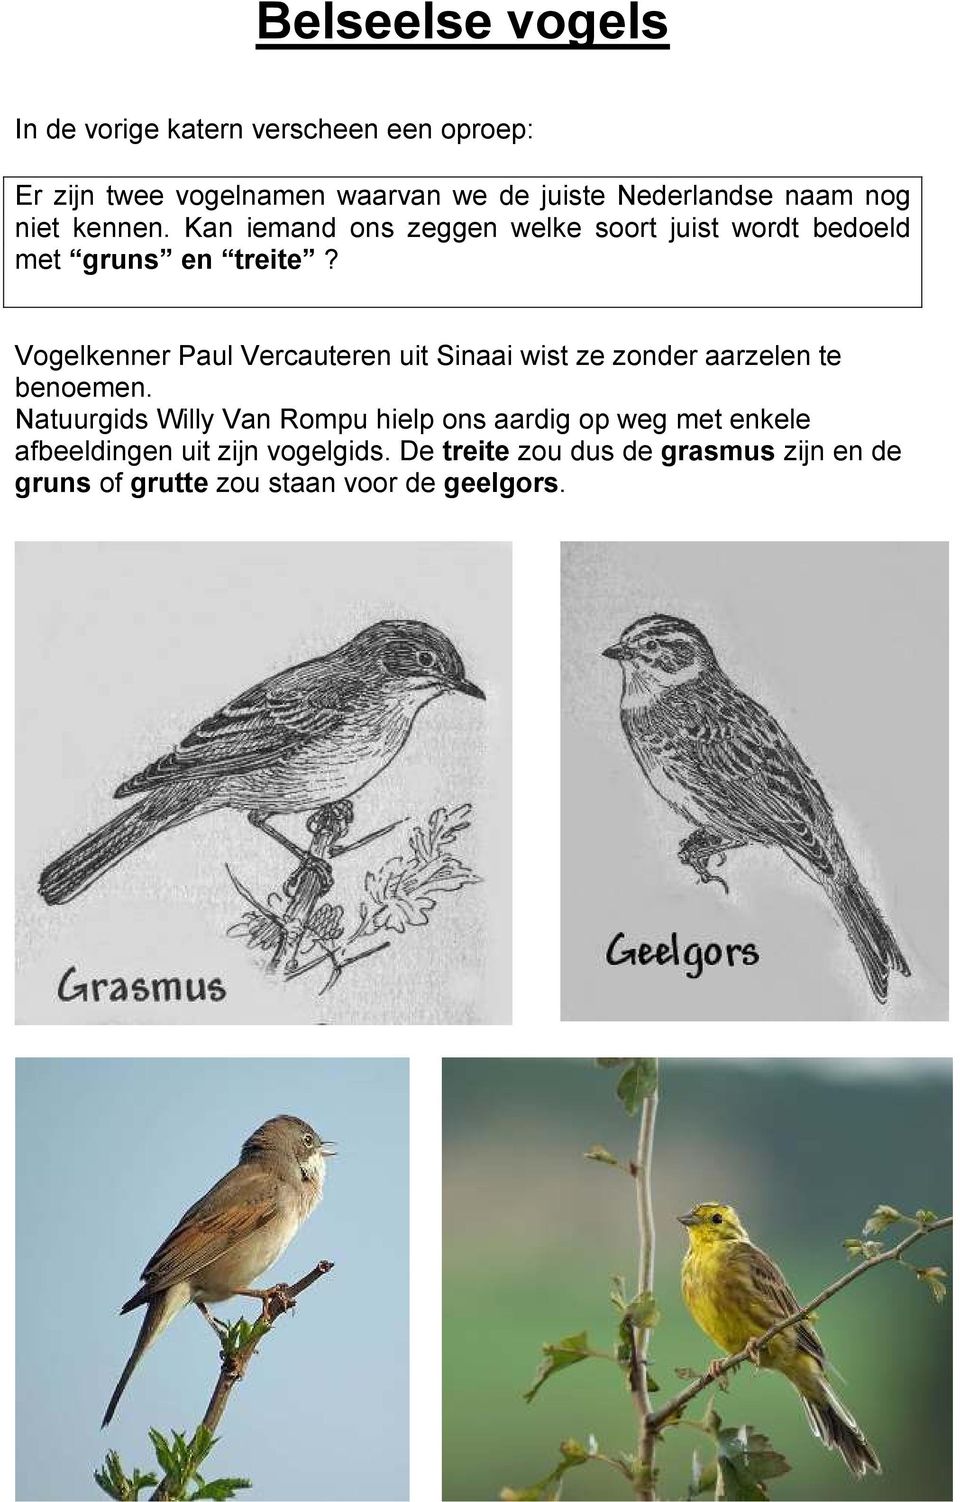 Vogelkenner Paul Vercauteren uit Sinaai wist ze zonder aarzelen te benoemen.